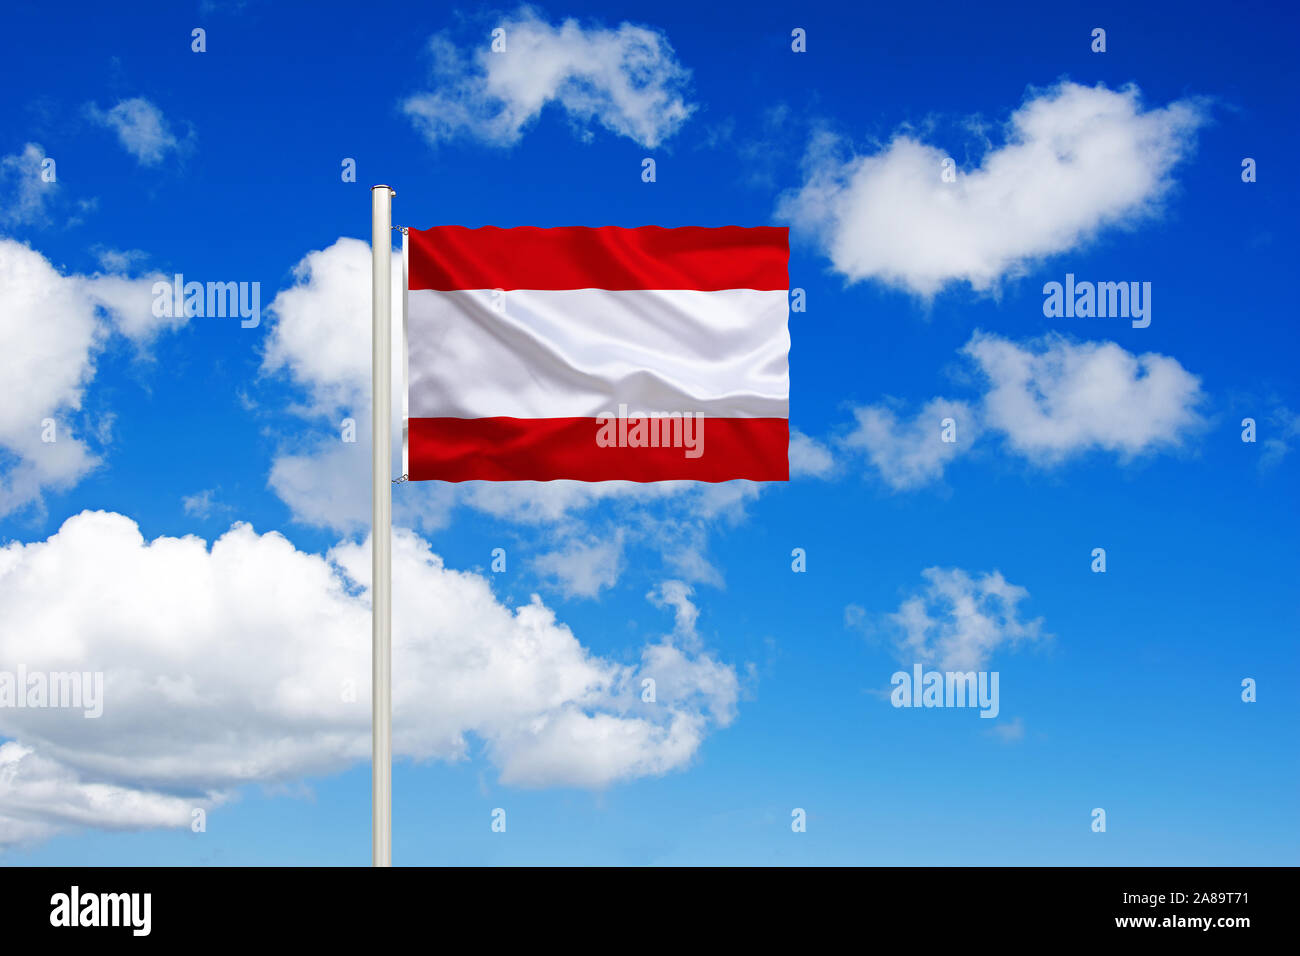 Französich-Polynesien, Tahiti, Südsee, Nationalfahne, Nationalflagge, Fahne, Flagge, Flaggenmast, Cumulus Wolken vor blauen Himmel, Foto de stock